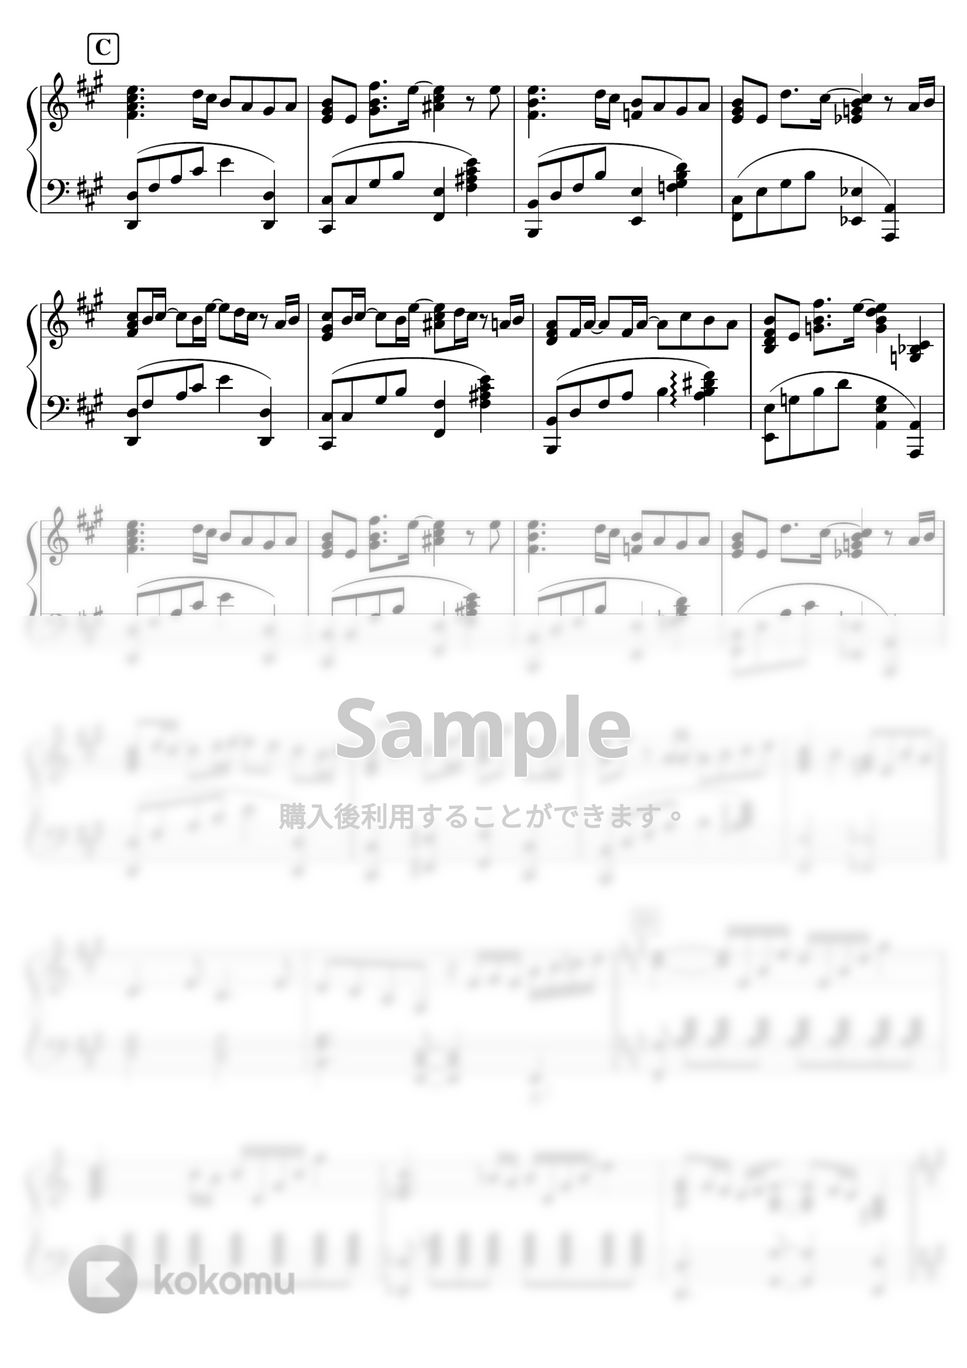 藤井風 - 【中級-上級】帰ろう／藤井風 (藤井風,帰ろう) by ピアノのせんせいの楽譜集